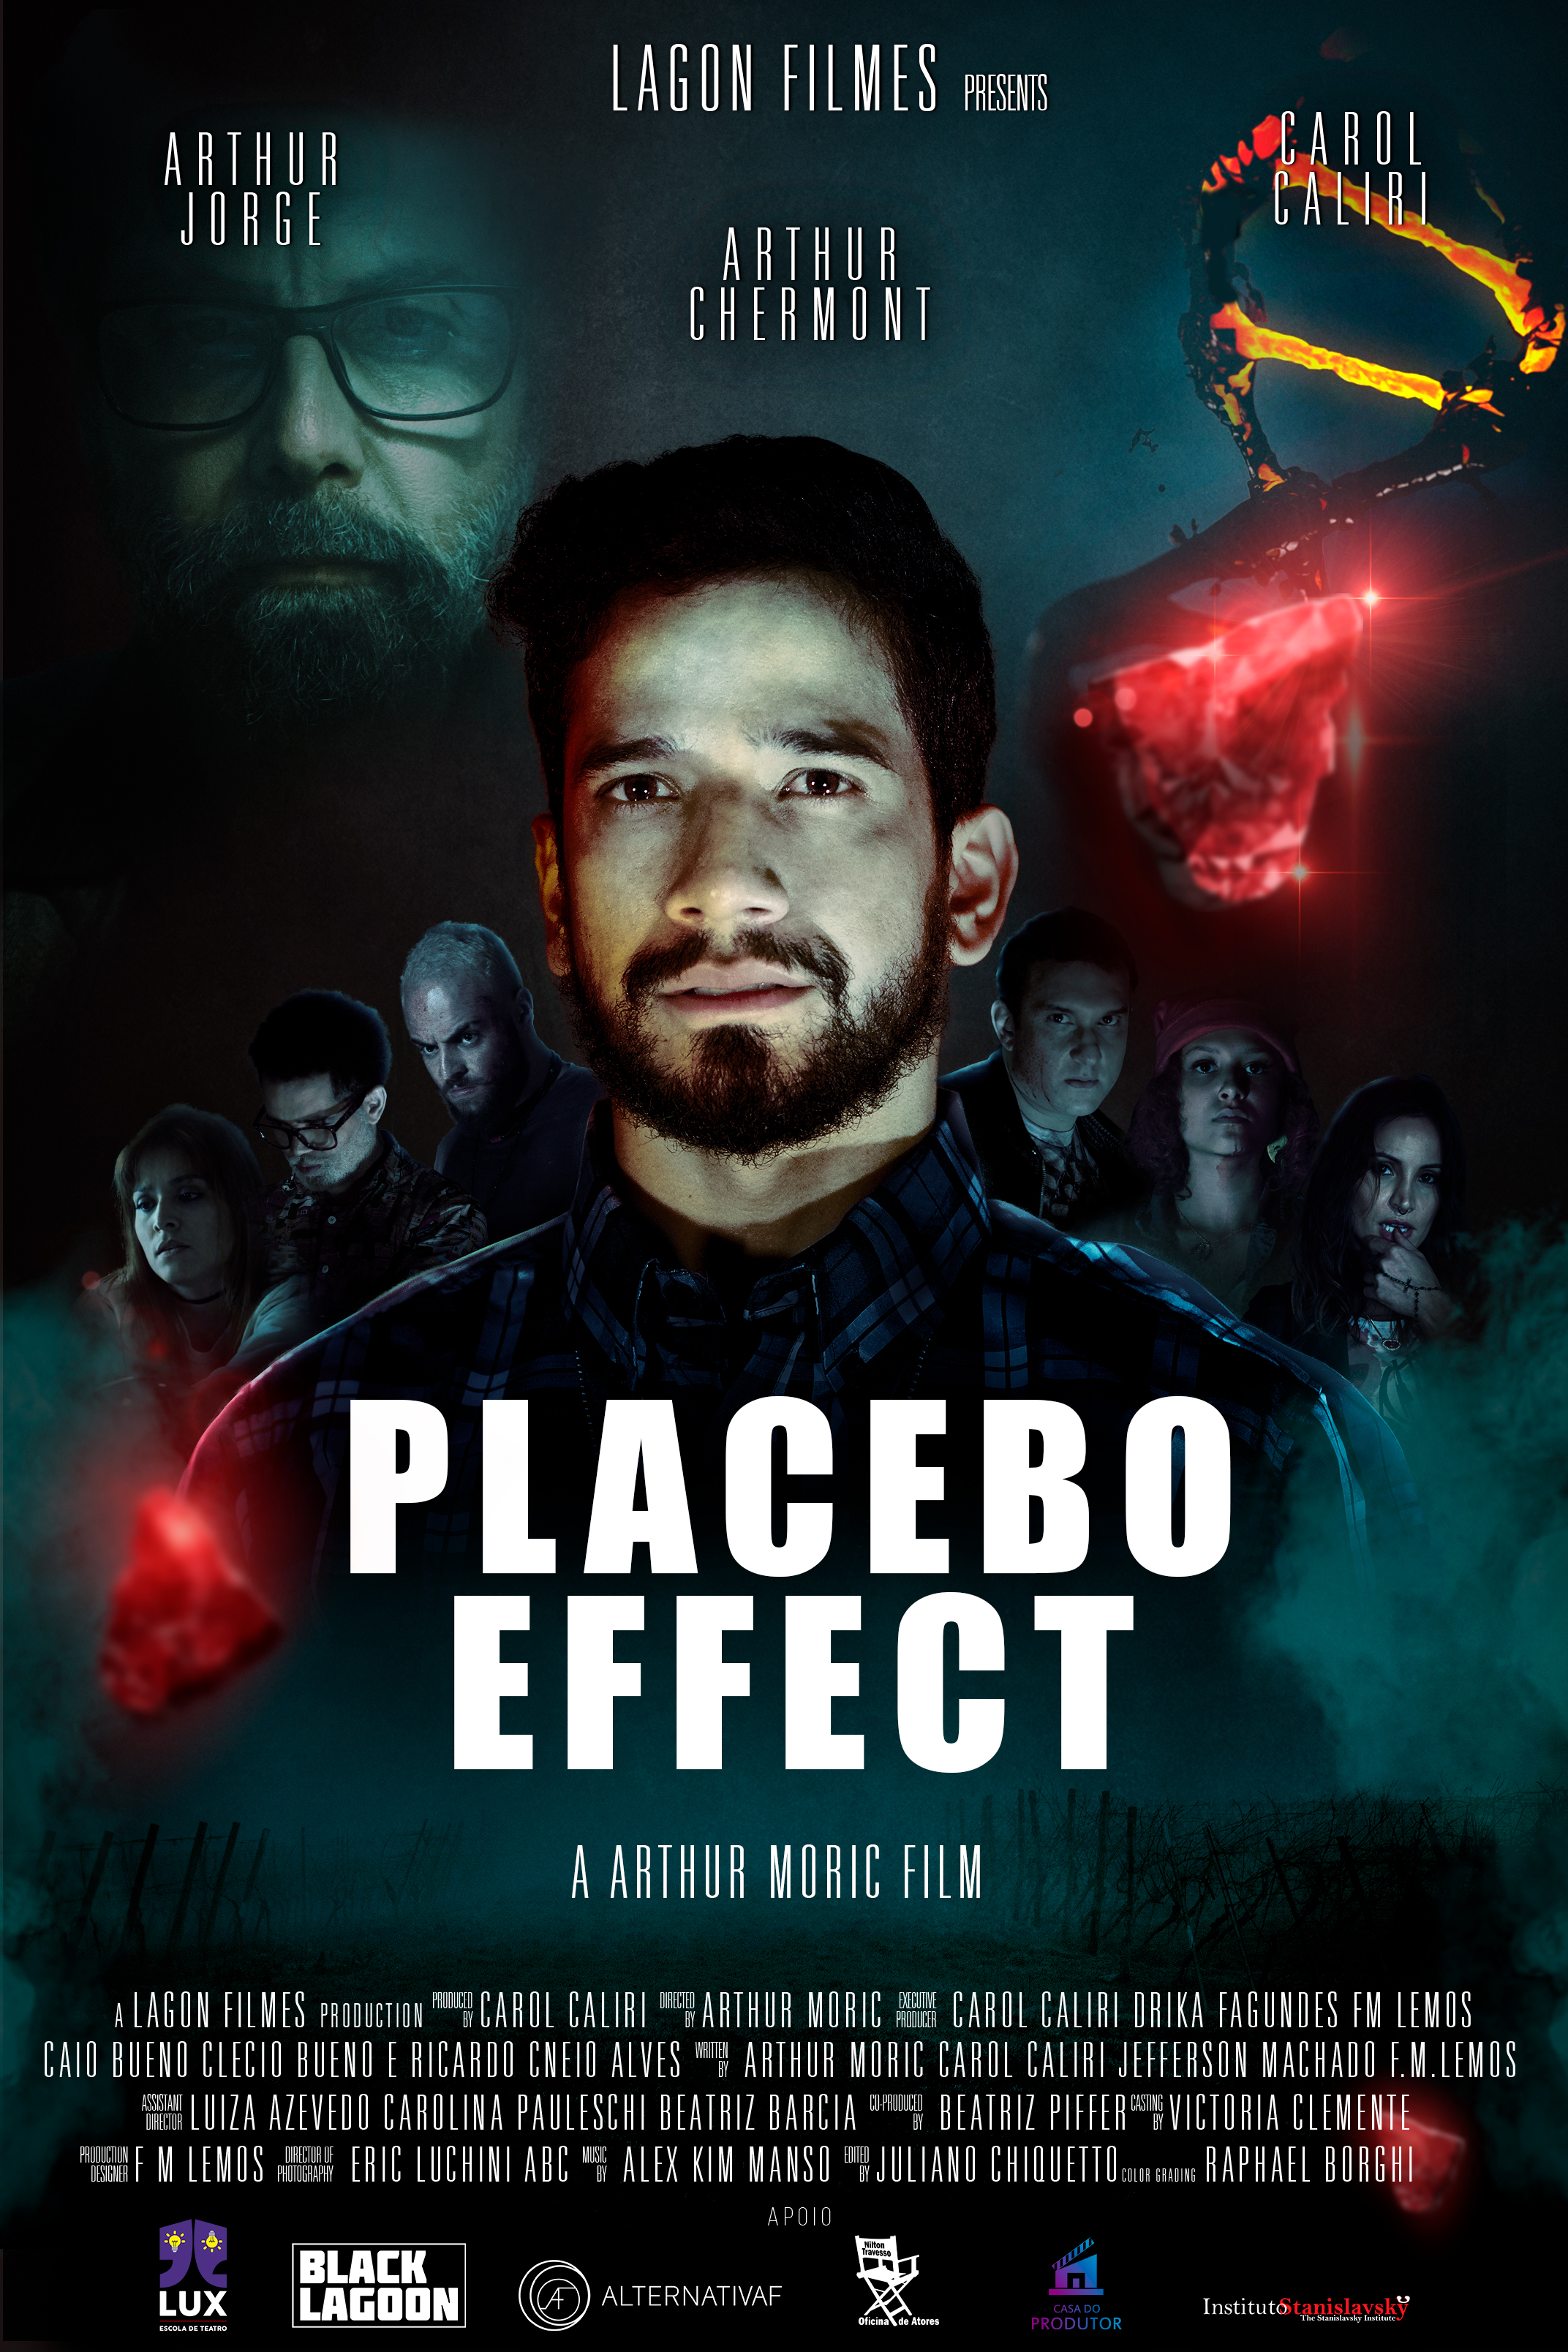 Efeito Placebo